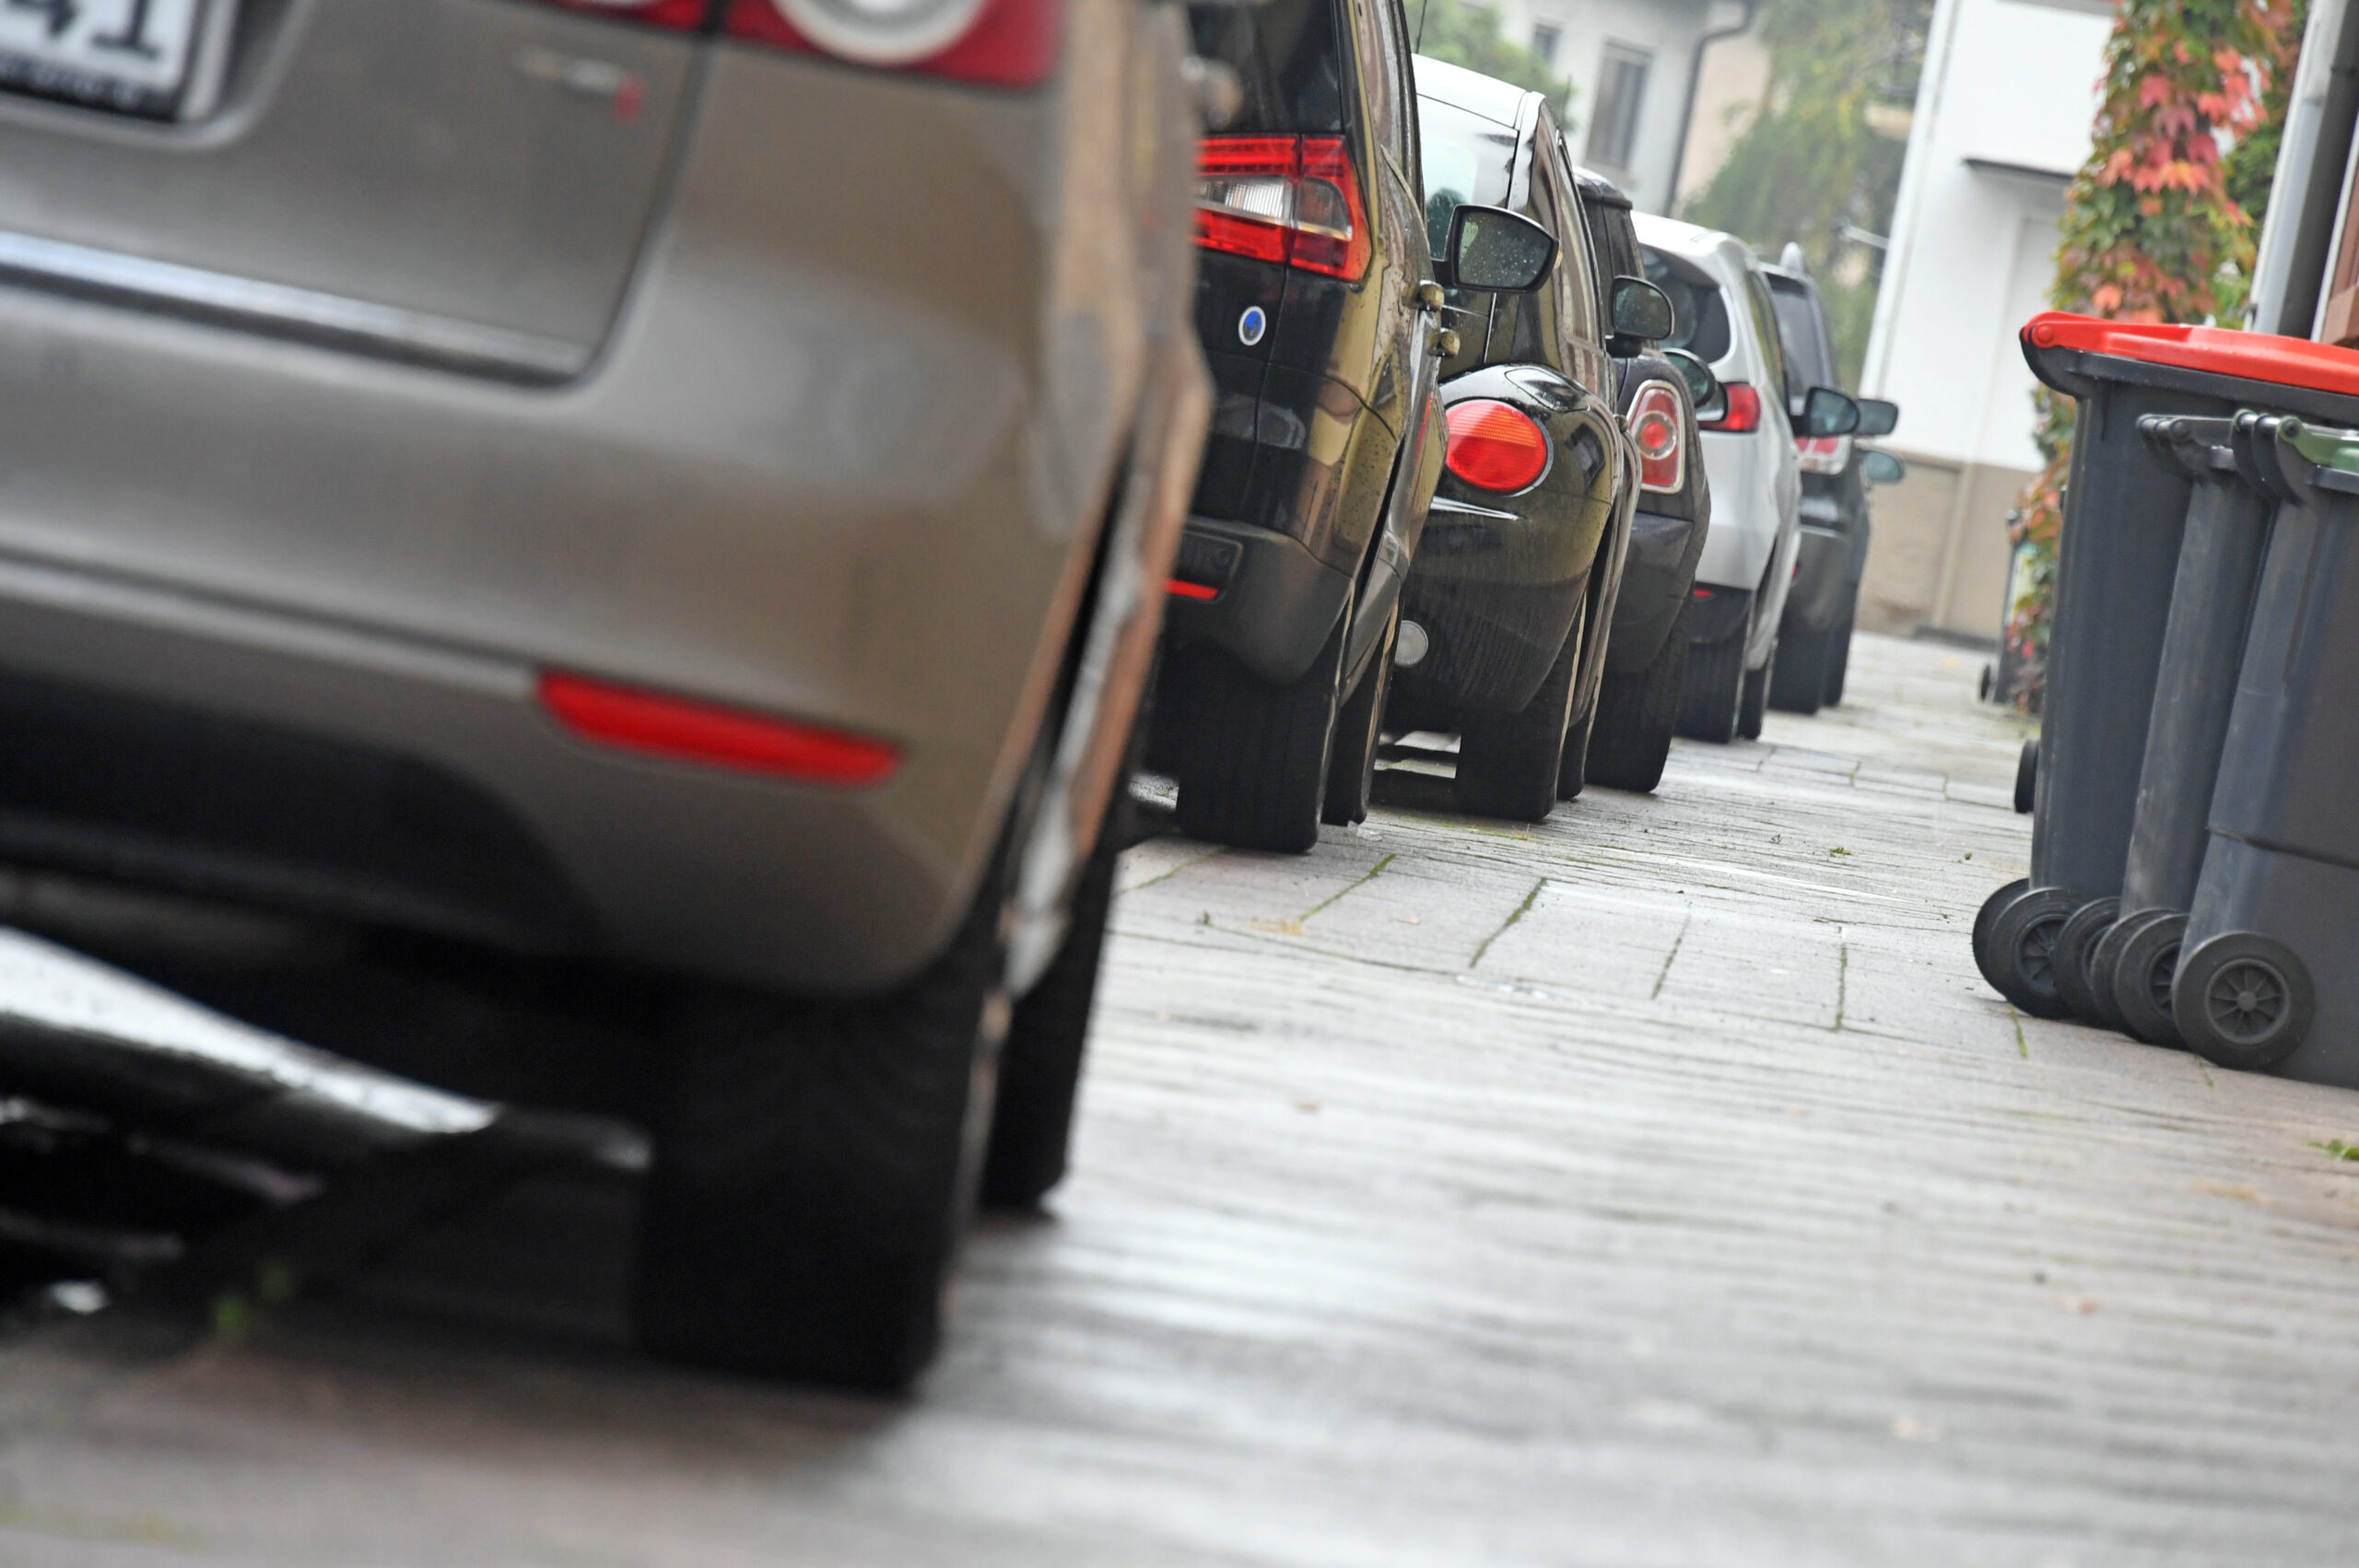 Viele Autos parken mit zwei Reifen auf dem Gehweg – an vielen Stellen ist das aber gar nicht erlaubt. (Symbolbild)